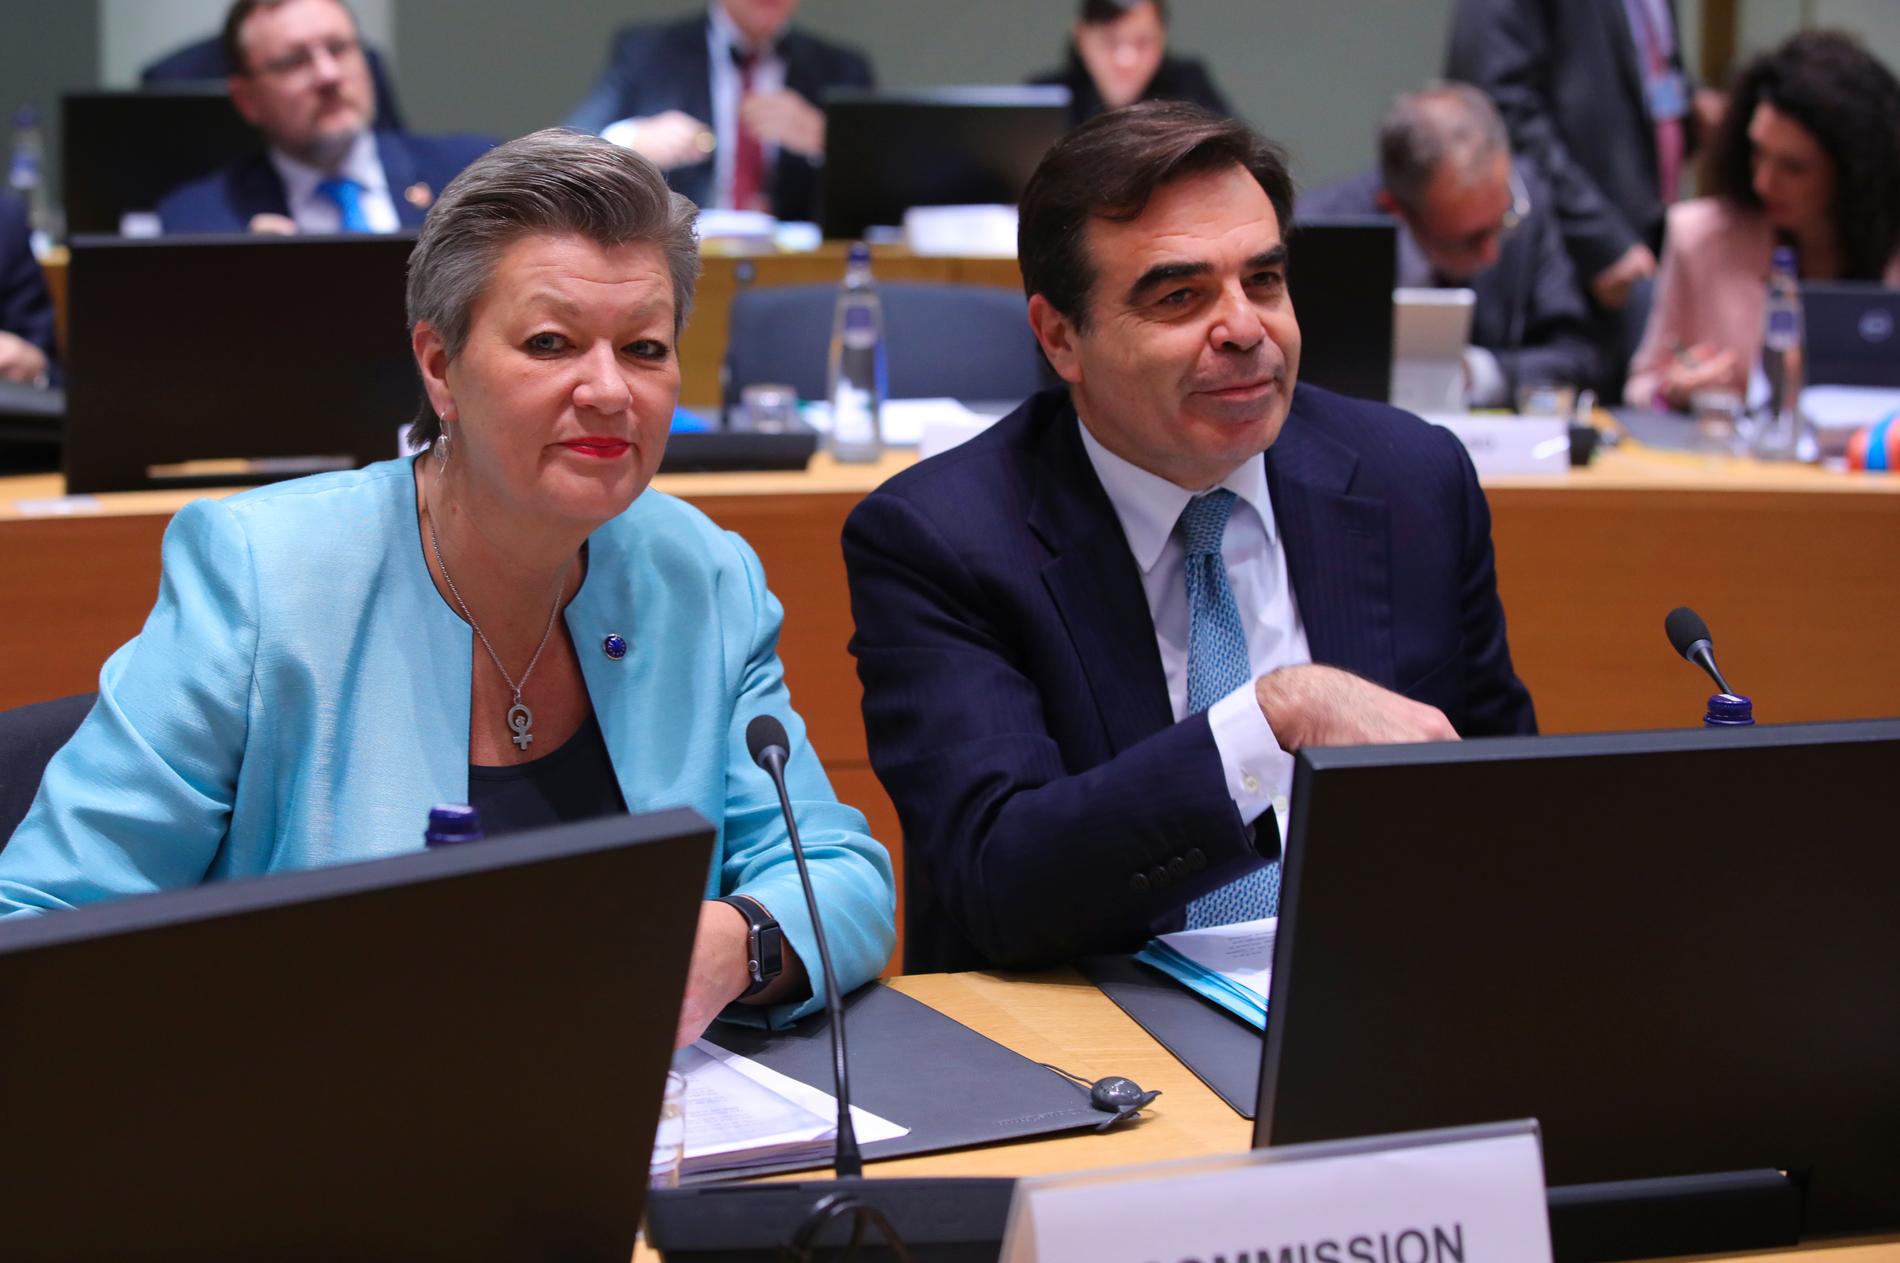 EU:s migrationsansvariga kommissionärer Ylva Johansson och Margaritis Schinas vid onsdagens migrationsministermöte i Bryssel.